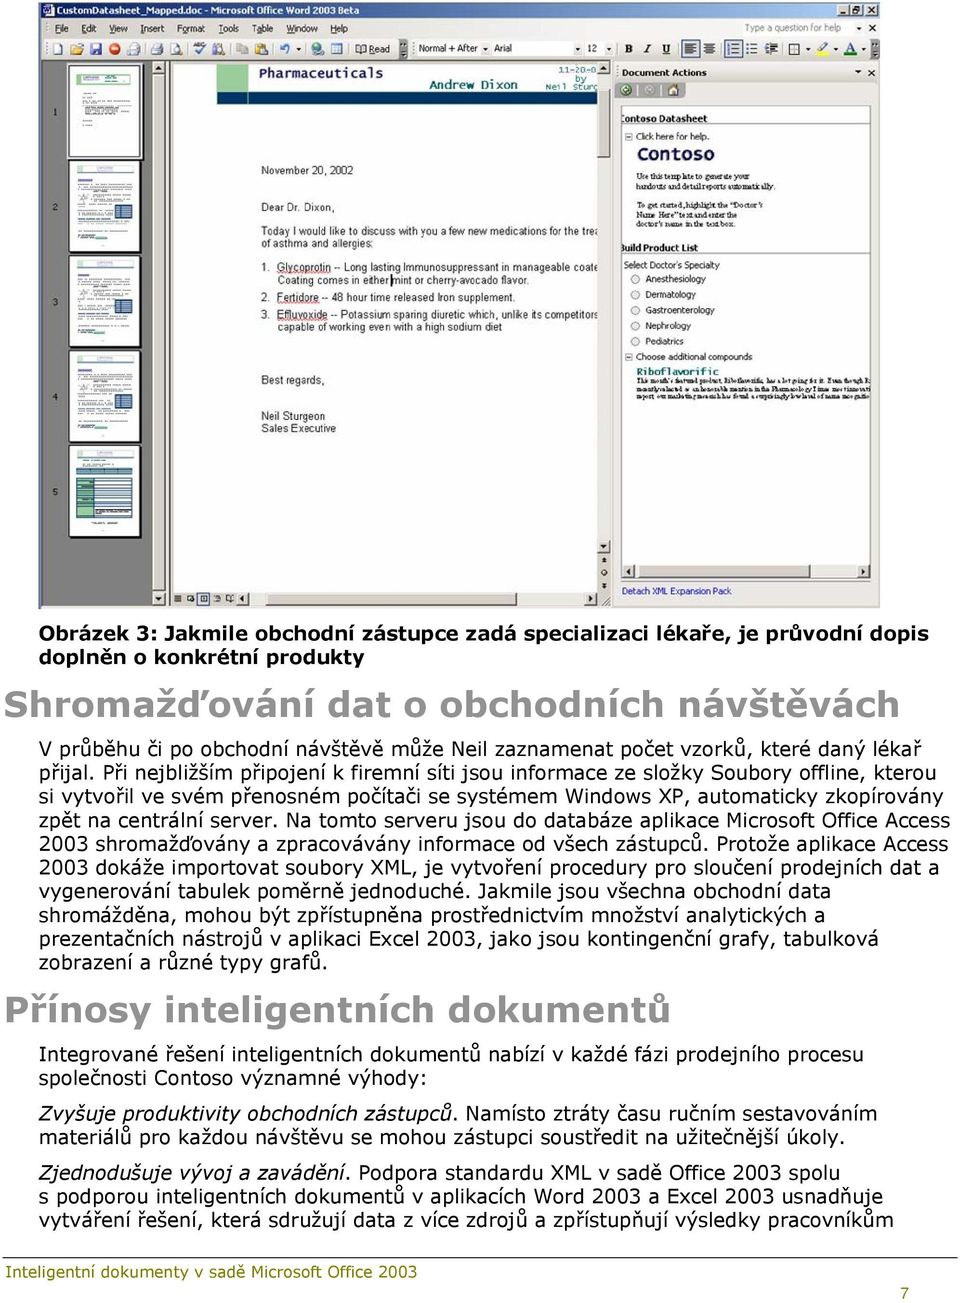 Při nejbližším připojení k firemní síti jsou informace ze složky Soubory offline, kterou si vytvořil ve svém přenosném počítači se systémem Windows XP, automaticky zkopírovány zpět na centrální